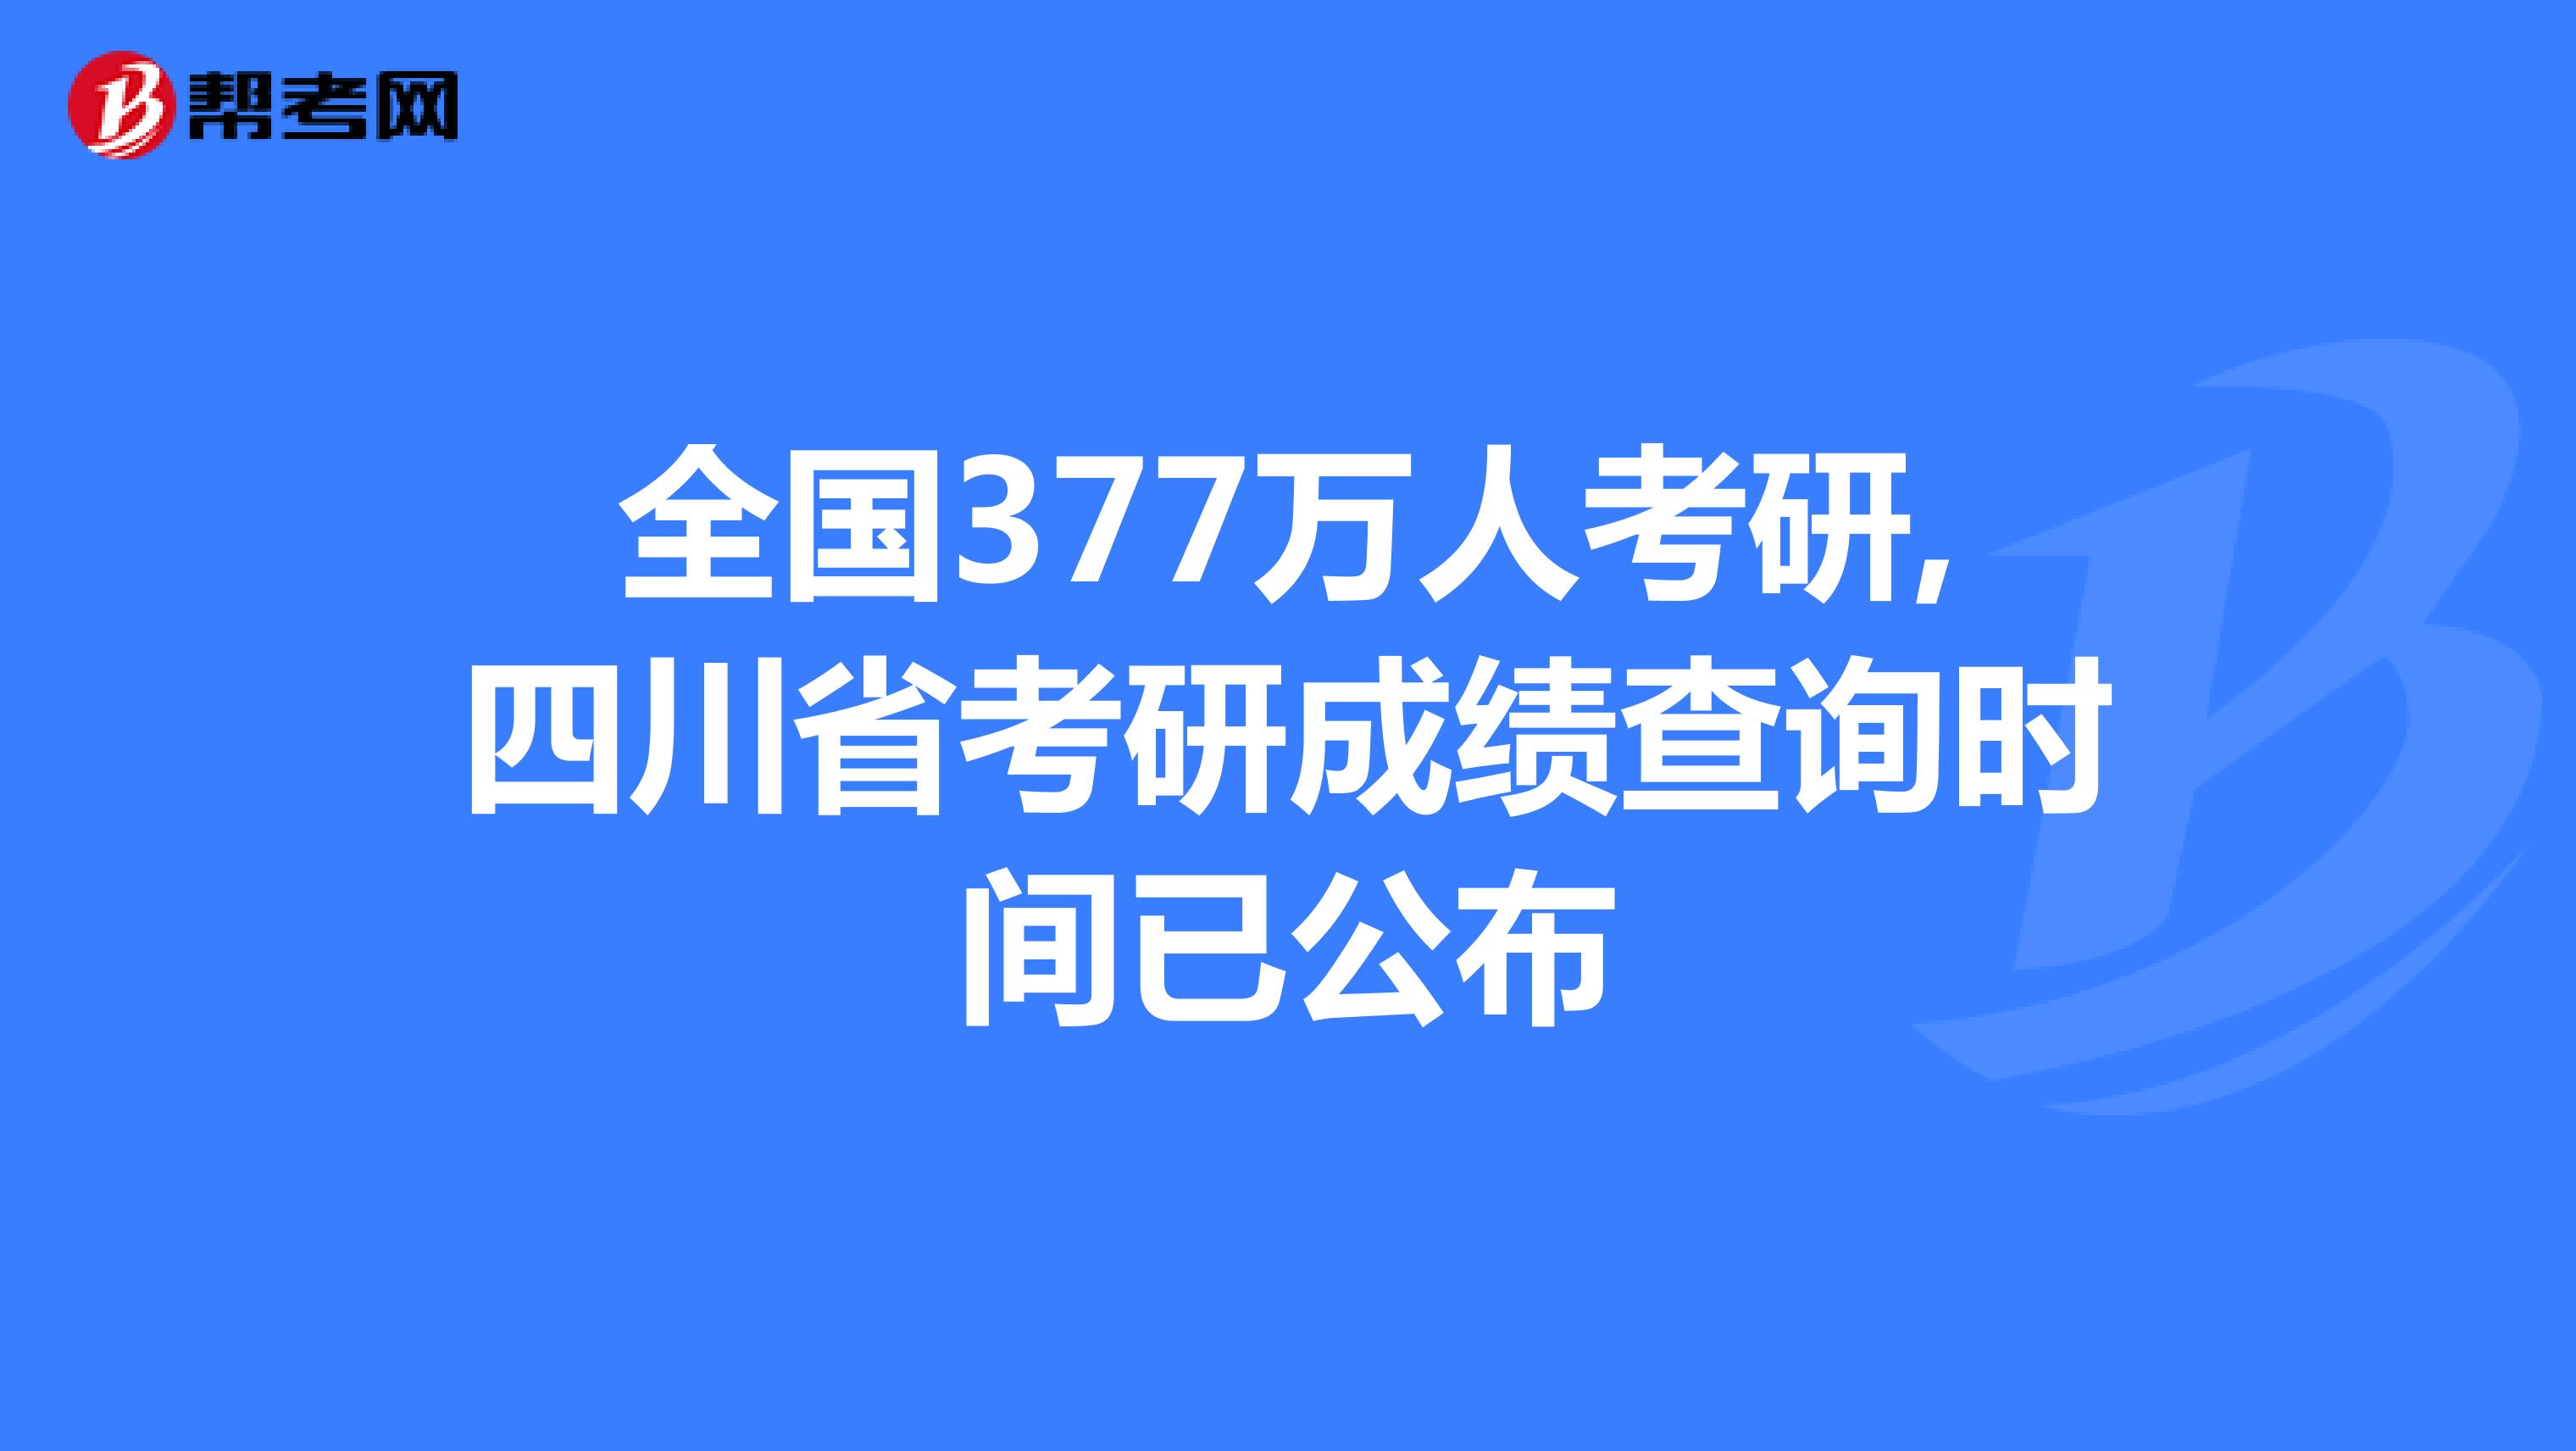 全国377万人考研,四川省考研成绩查询时间已公布